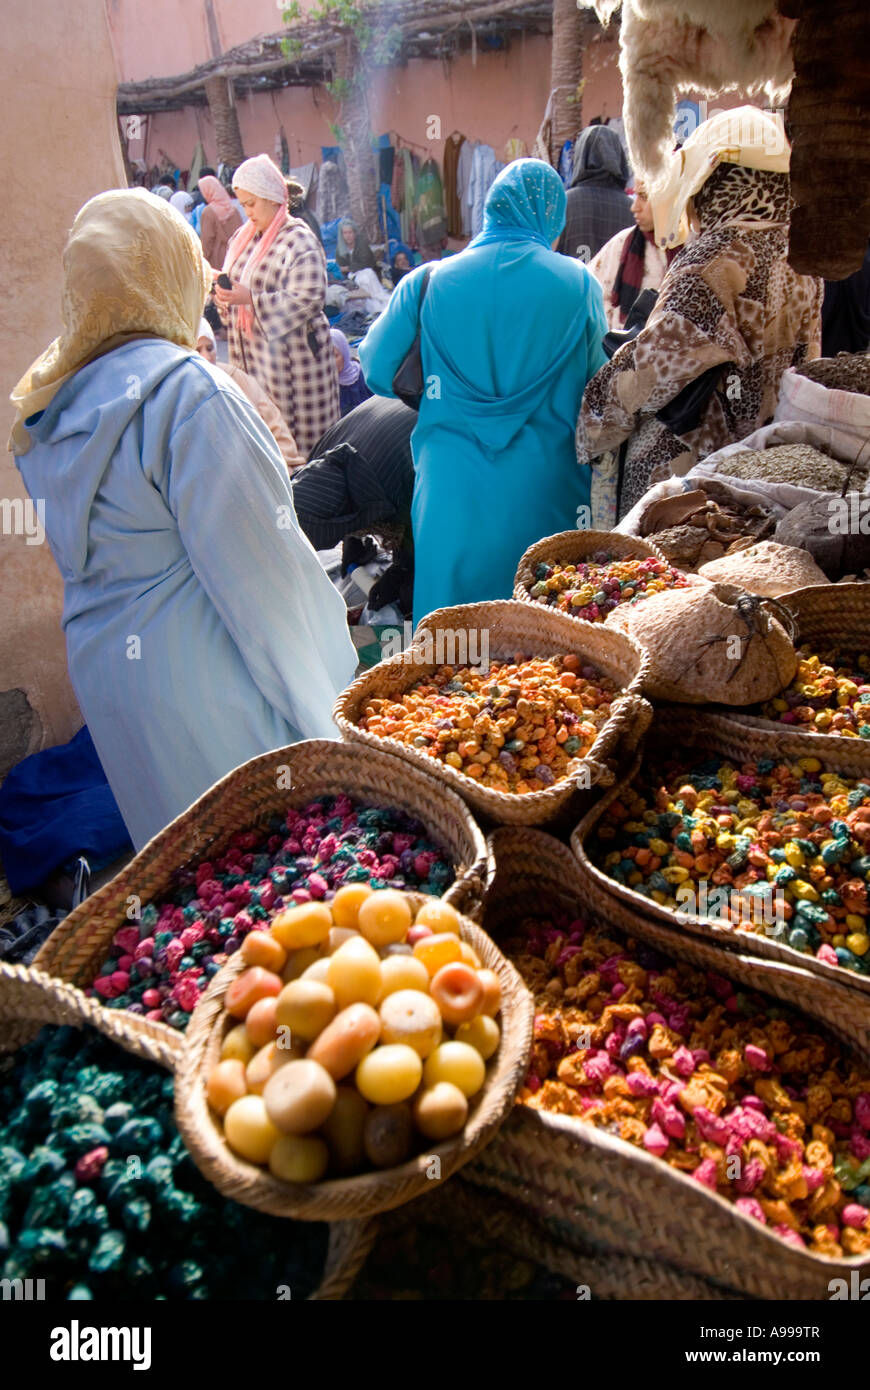 Le souk de womans qui était autrefois une zone de mise aux enchères sur le marché pour le commerce des esclaves à l'heure Maroc Marrakech Banque D'Images